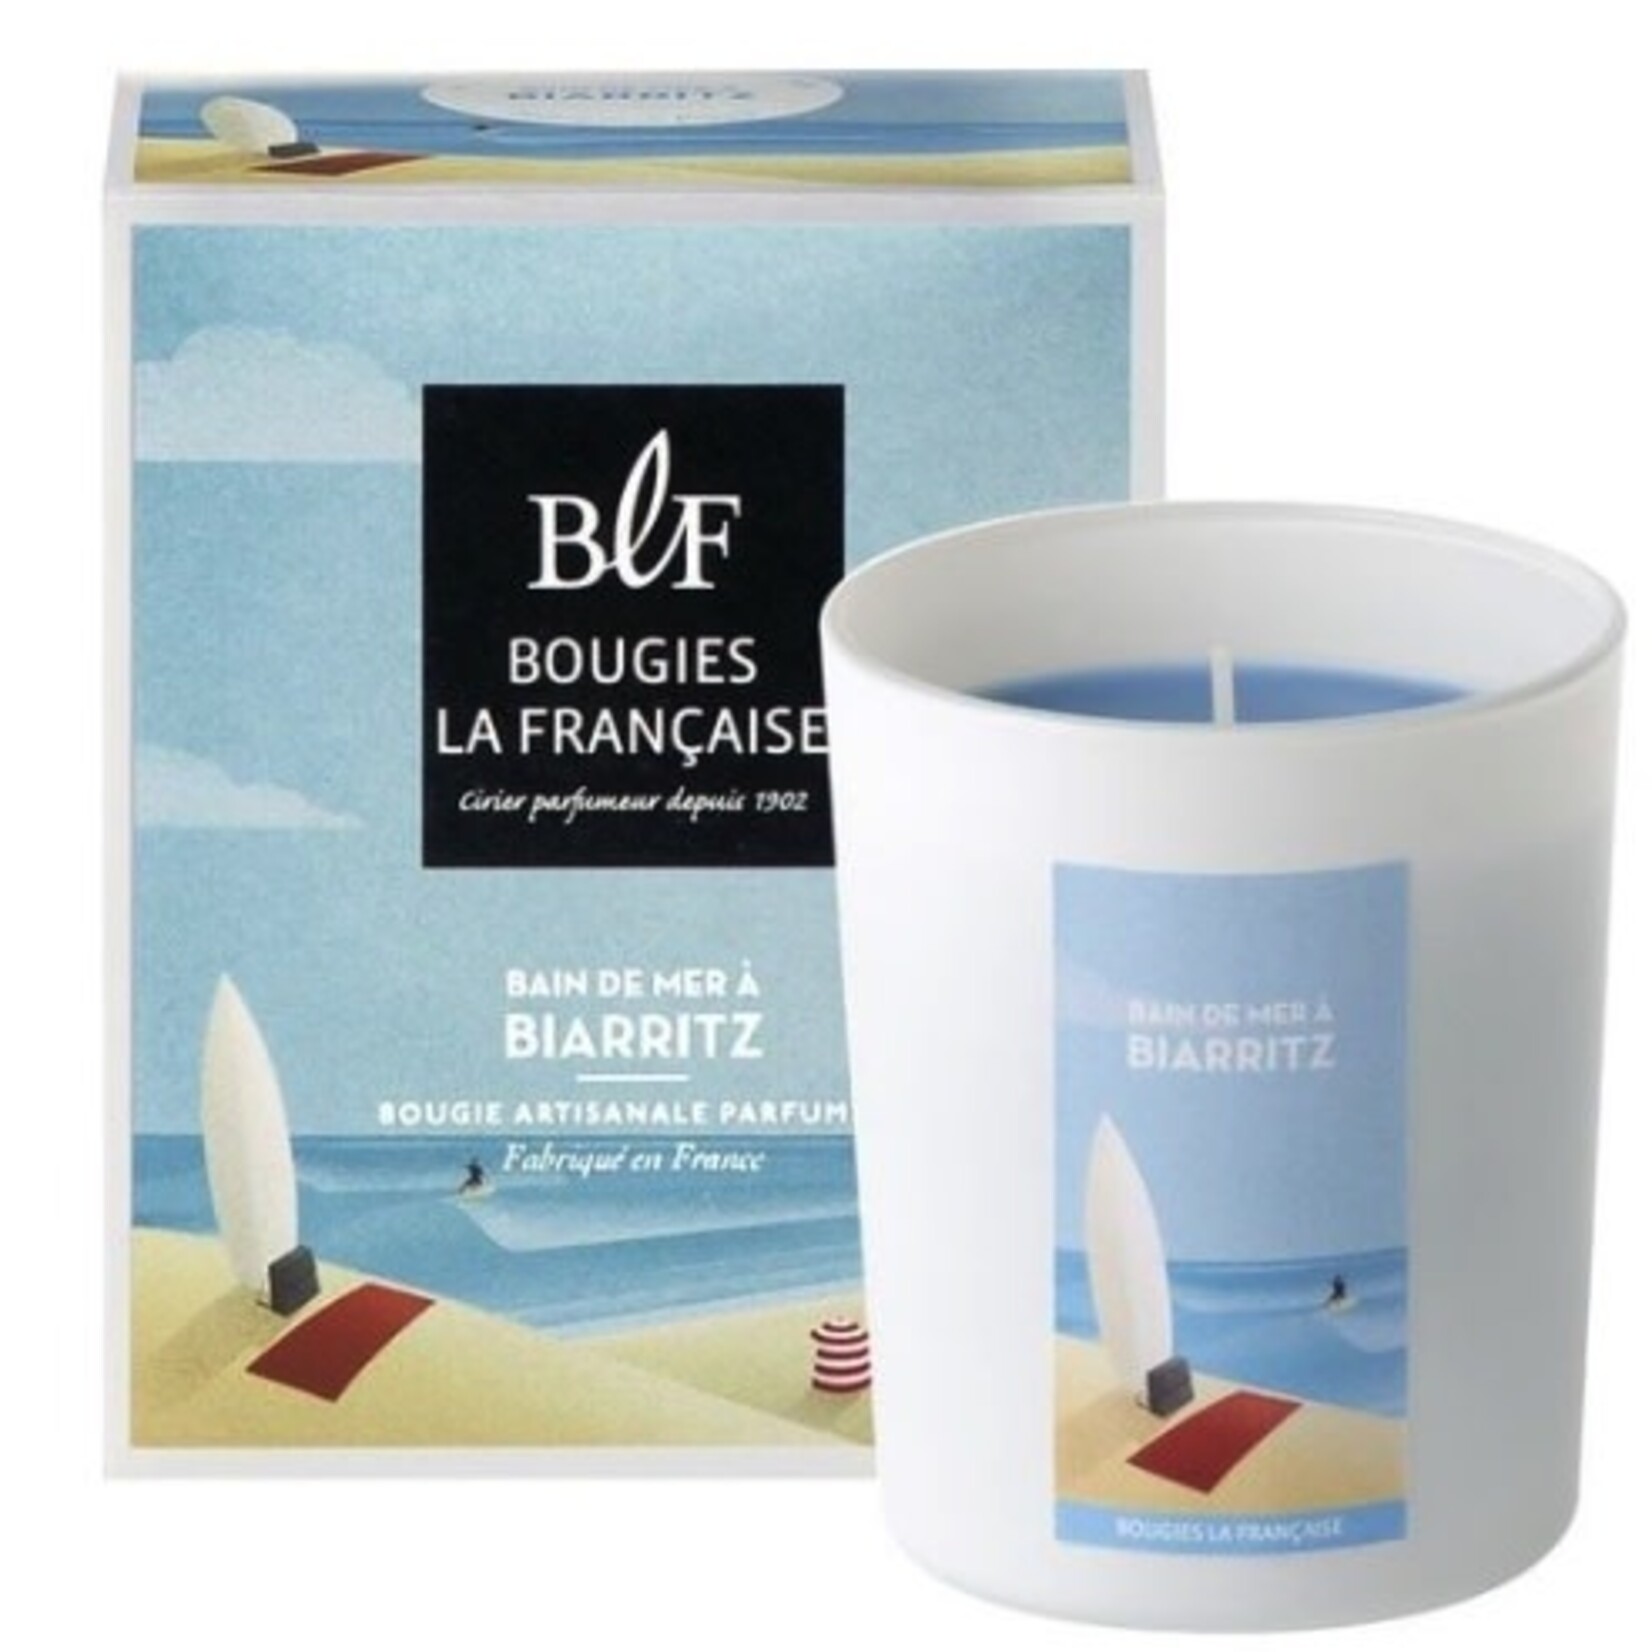 Bougie La Francaise Bougies La Française Scented Candle Biarritz